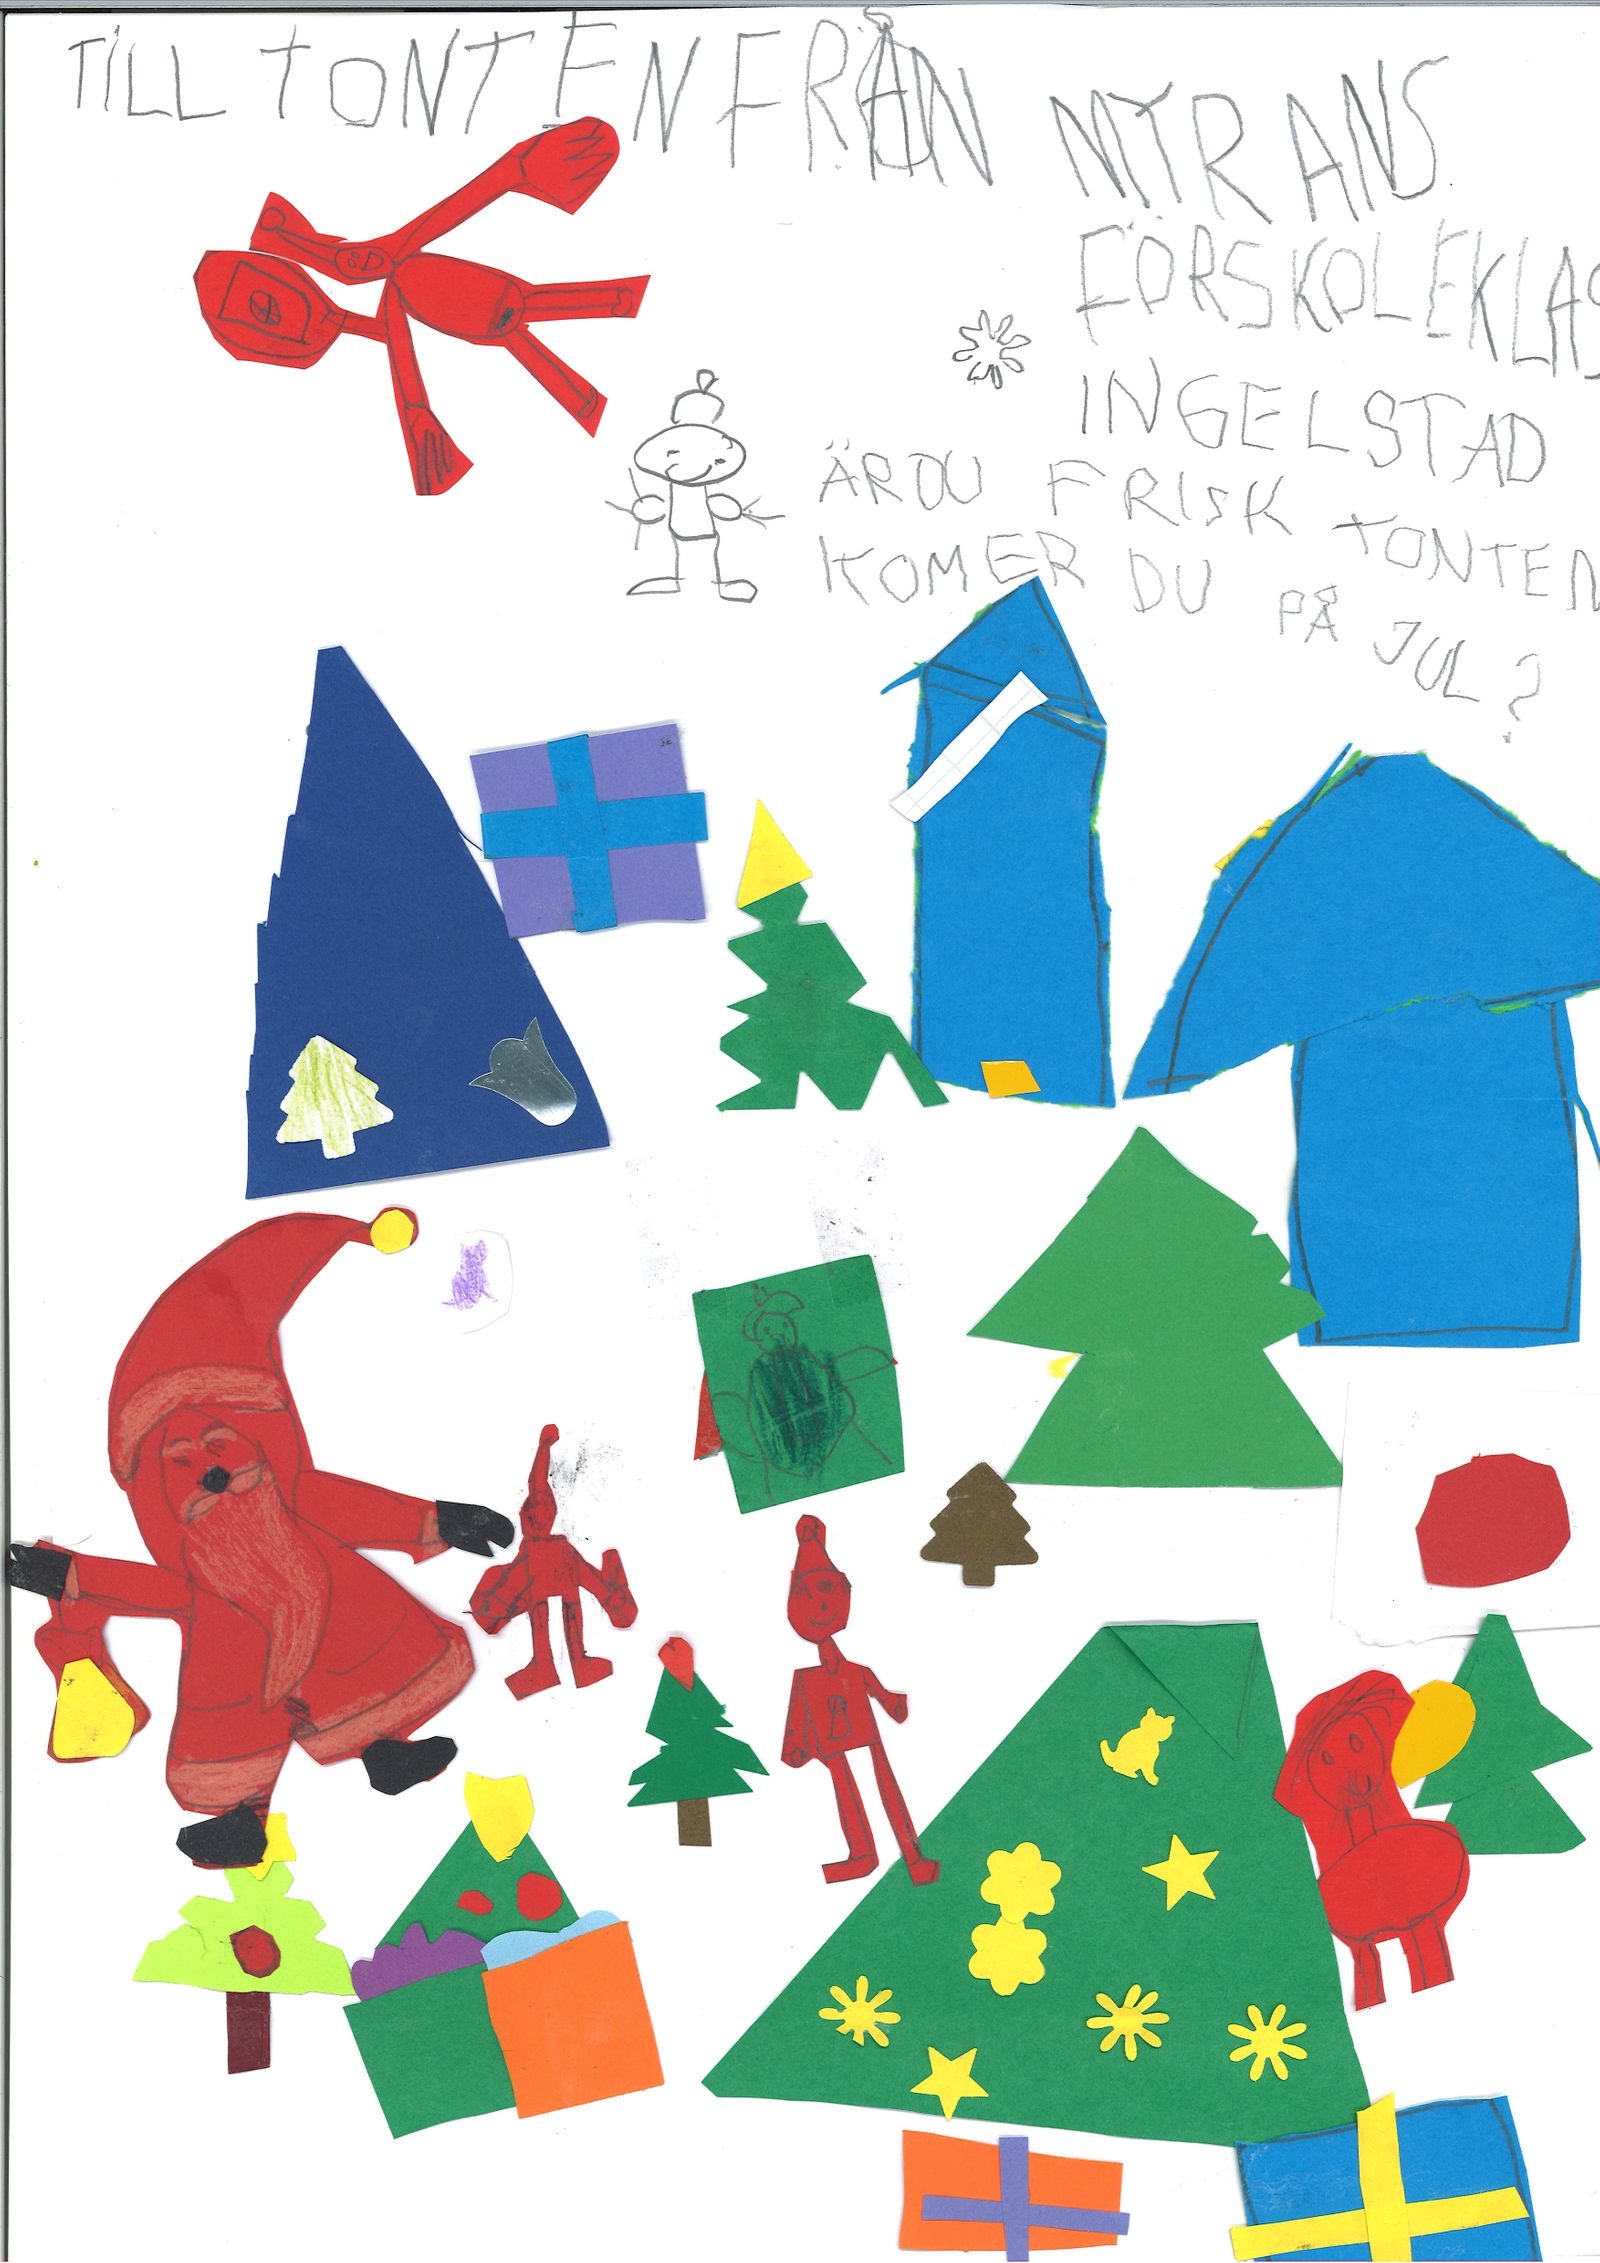 Barnen på Myrans förskola i Ingelstad undrar om Tomten är frisk och om han kommer på julafton.